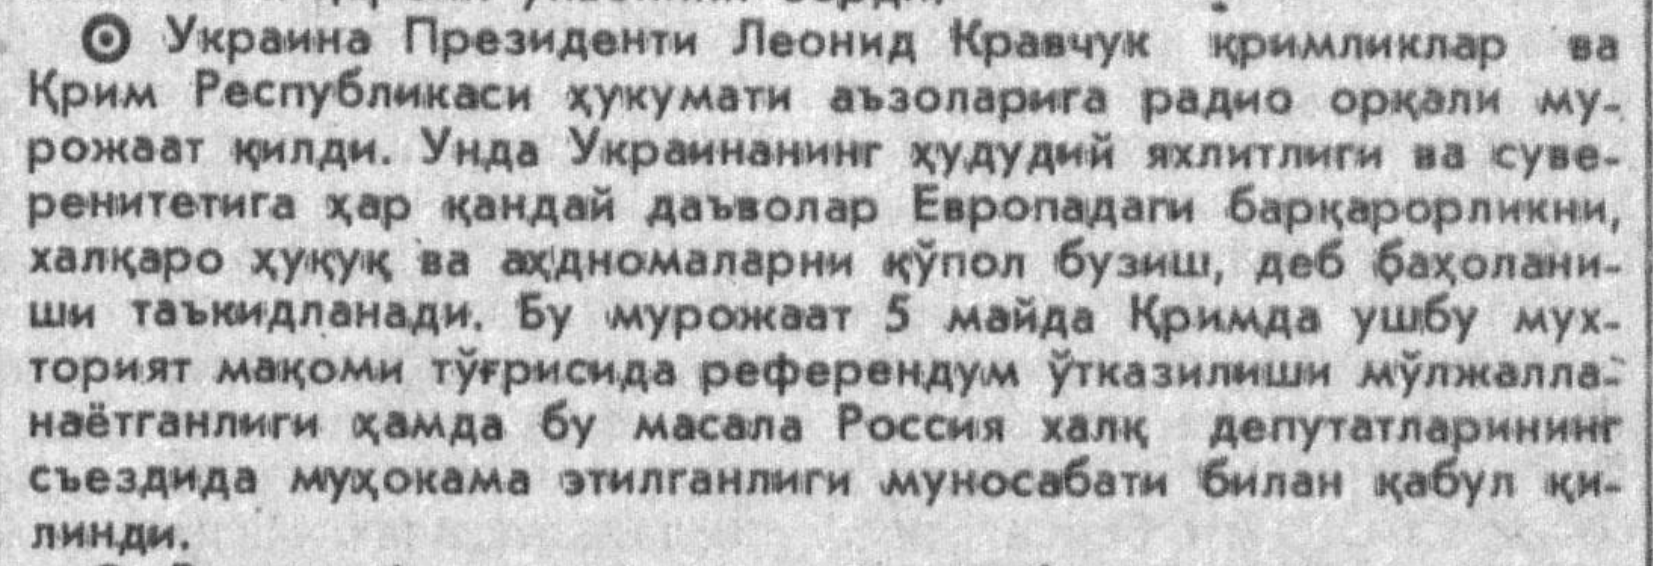 “Toshkent oqshomi” gazetasining 1992-yil 22-aprel sonidan lavha